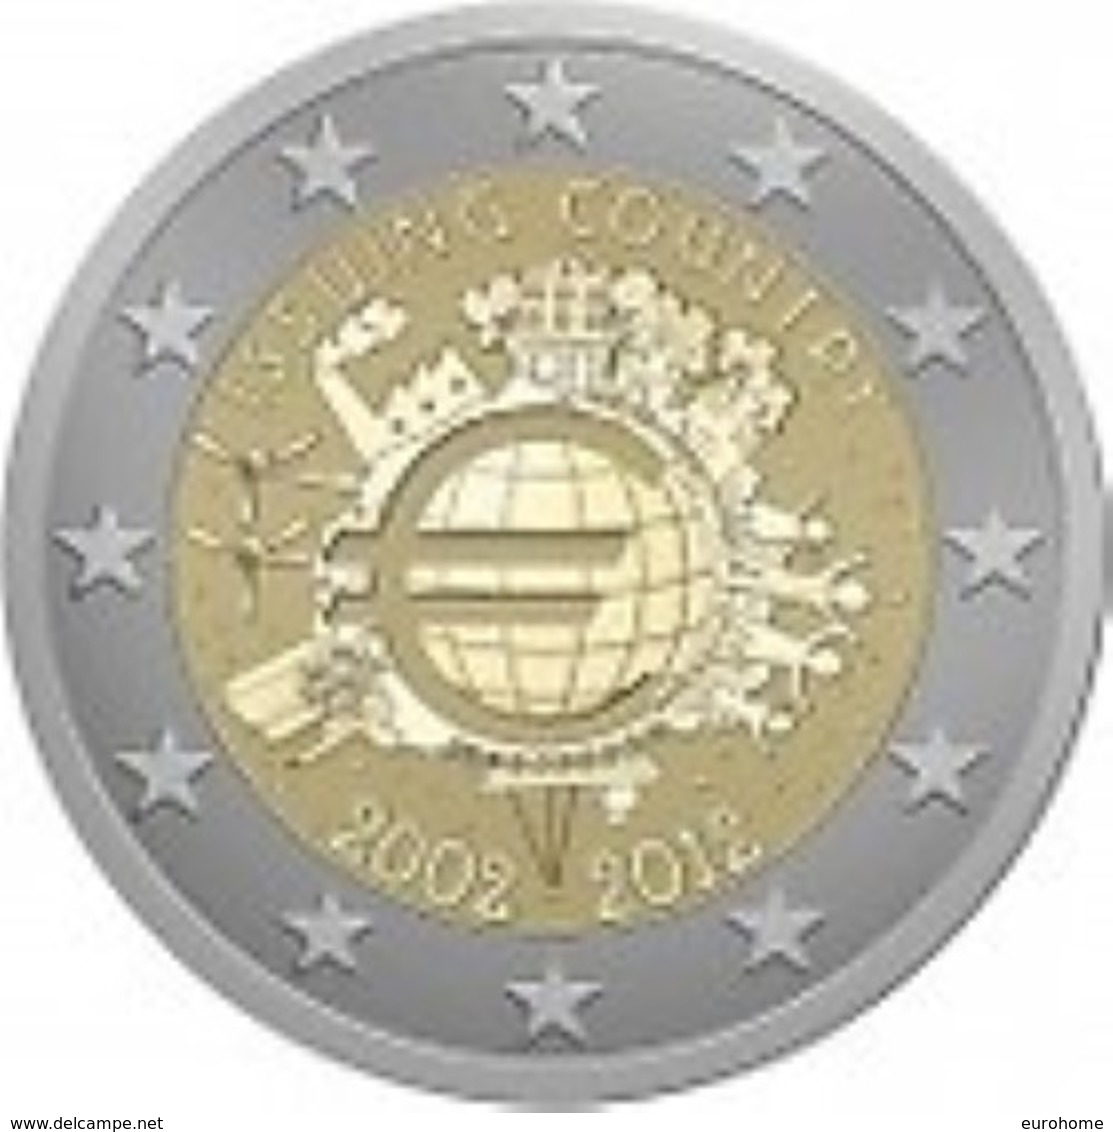 Griekenland 2012    2 Euro Commemo   10 Jaar Euro UNC Uit De Rol  UNC Du Rouleaux  !! - Grèce